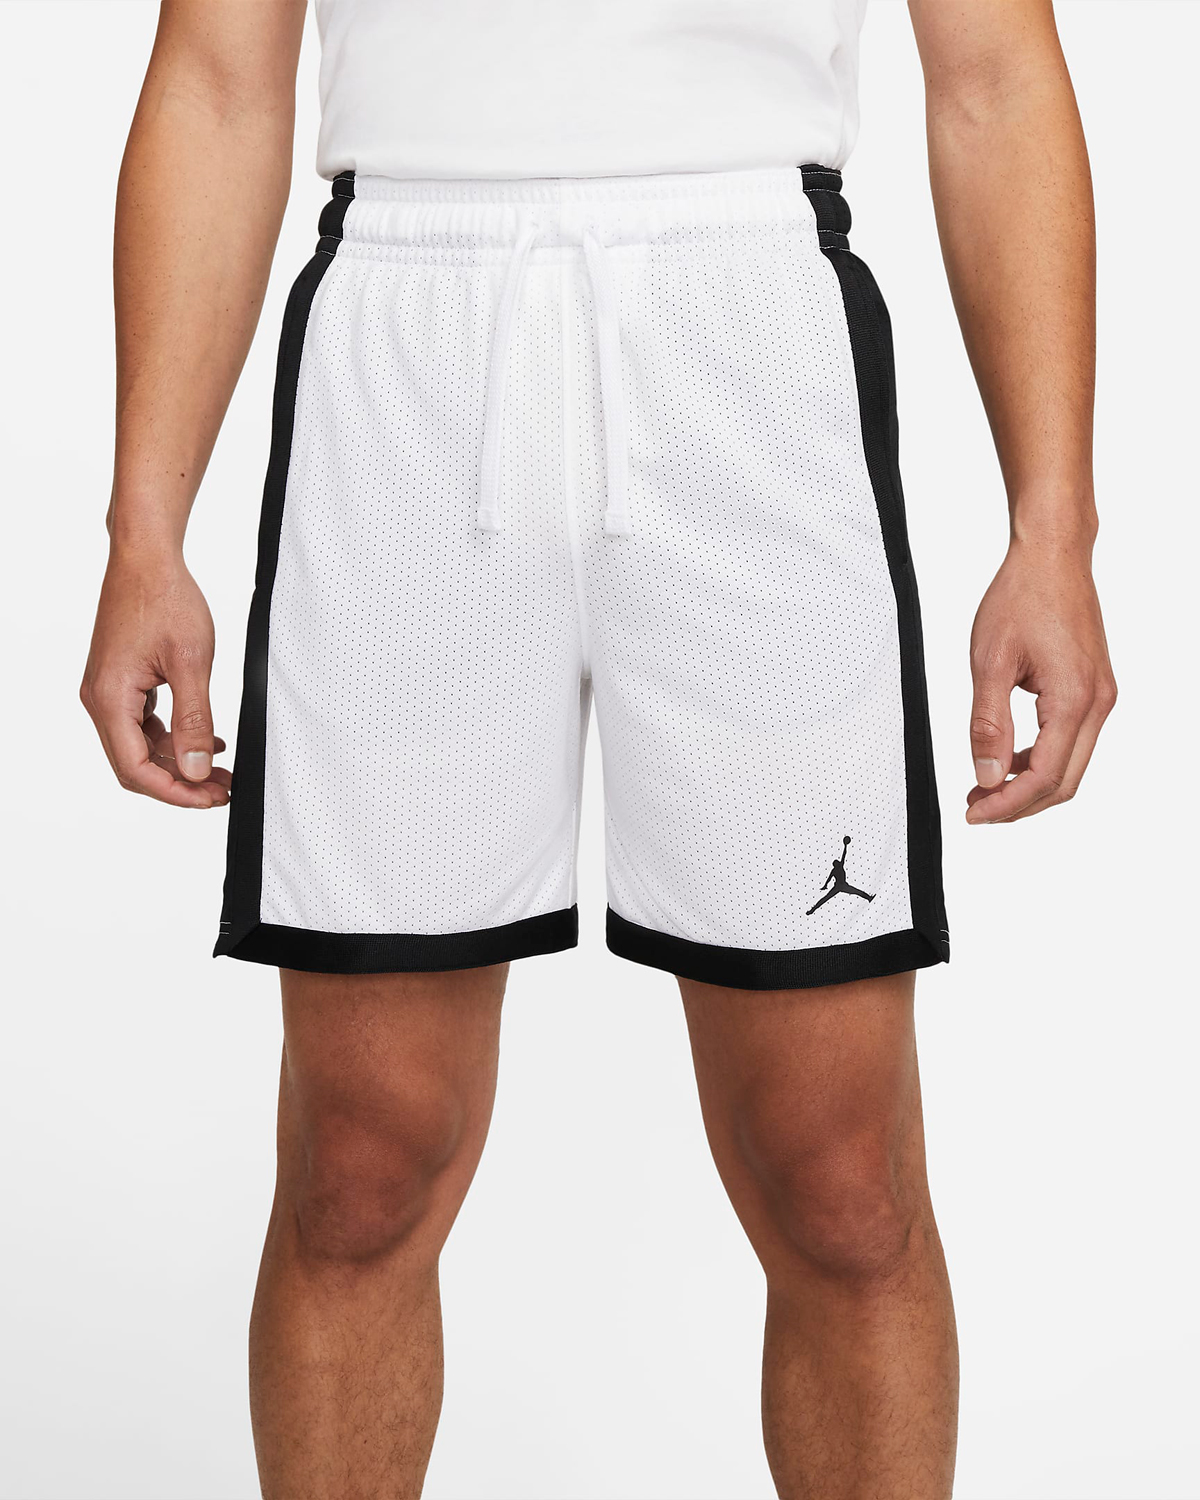 Jordan-Dri-FIT-Sport-Mesh-Basketball-Shorts-White-Black-1